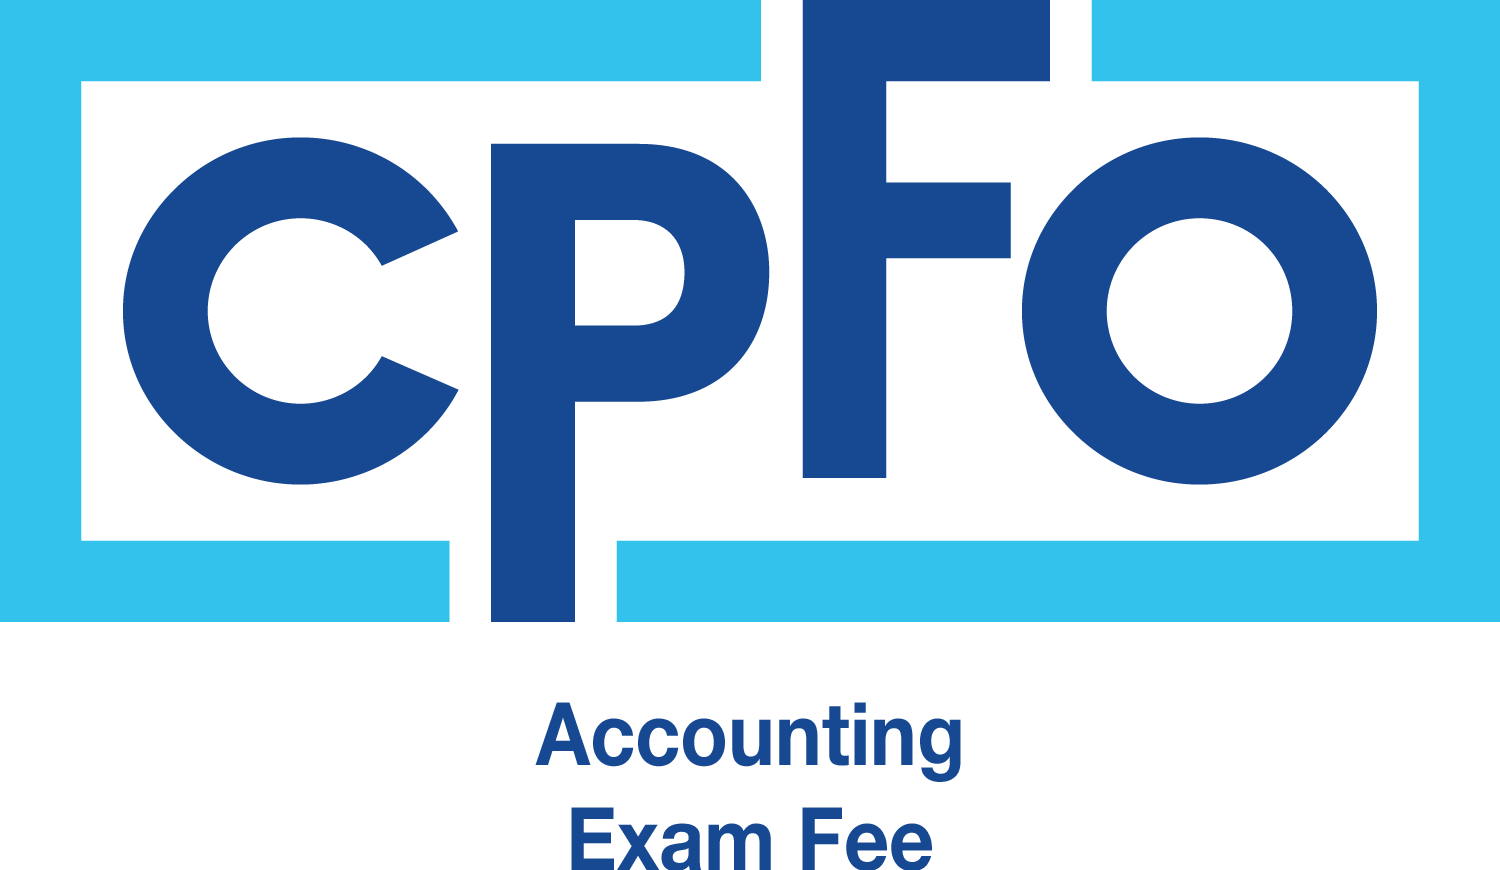 CPFO Exam Fee - Accounting